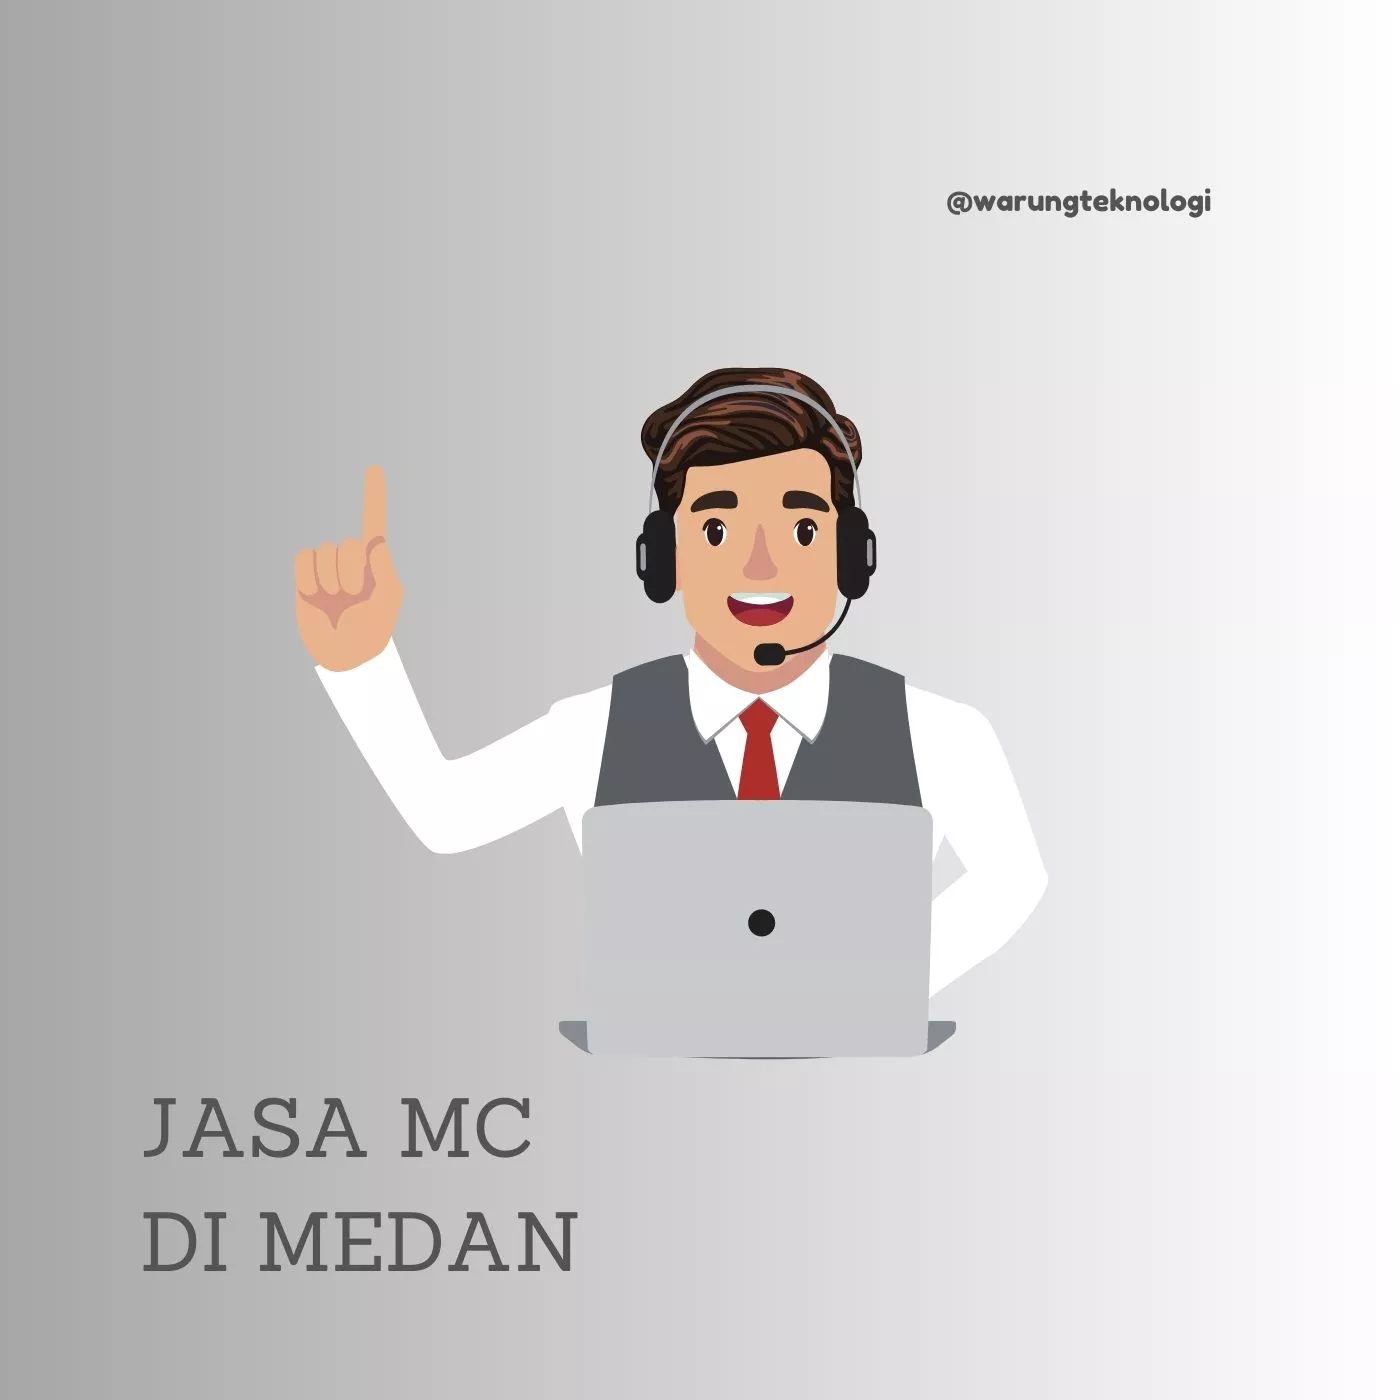 Jasa Mc Di Medan